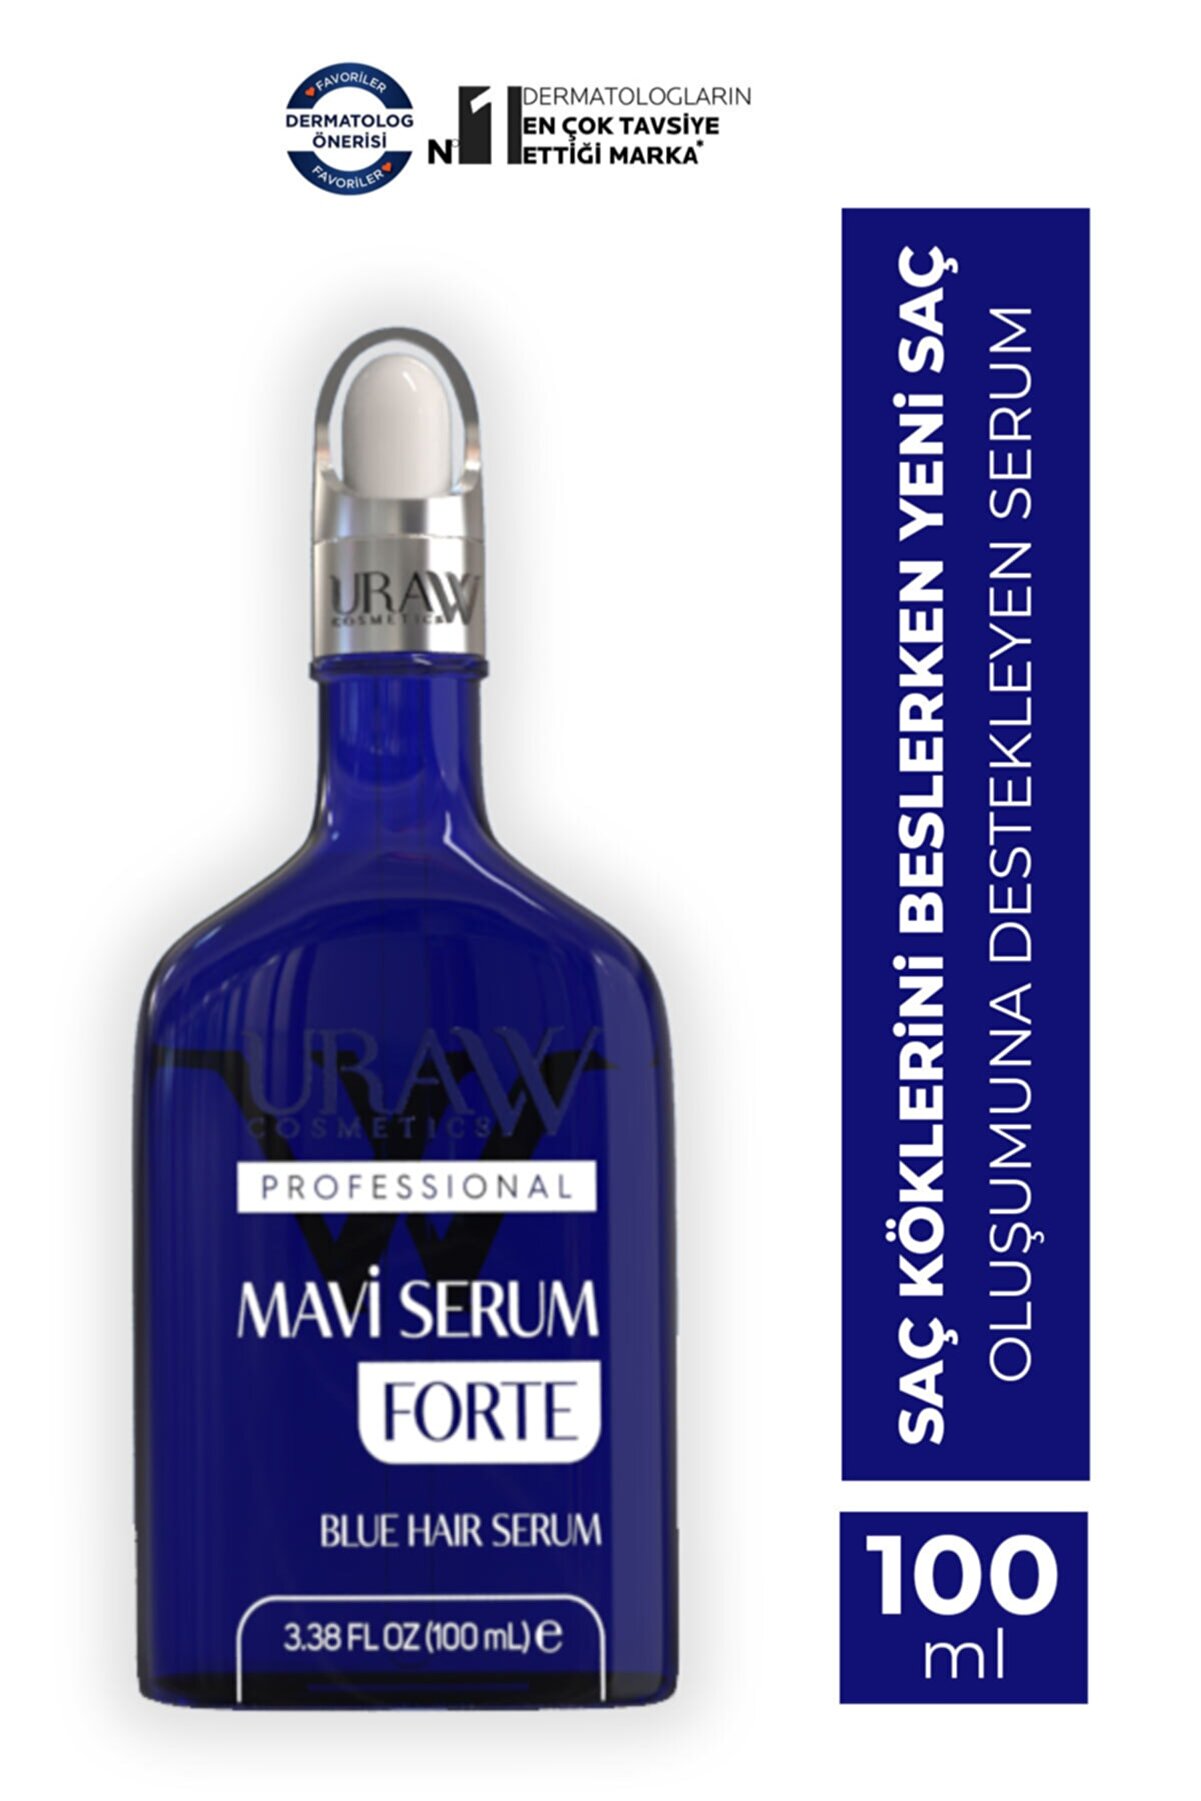 Uraw Mavi Serum Forte (100 ML)